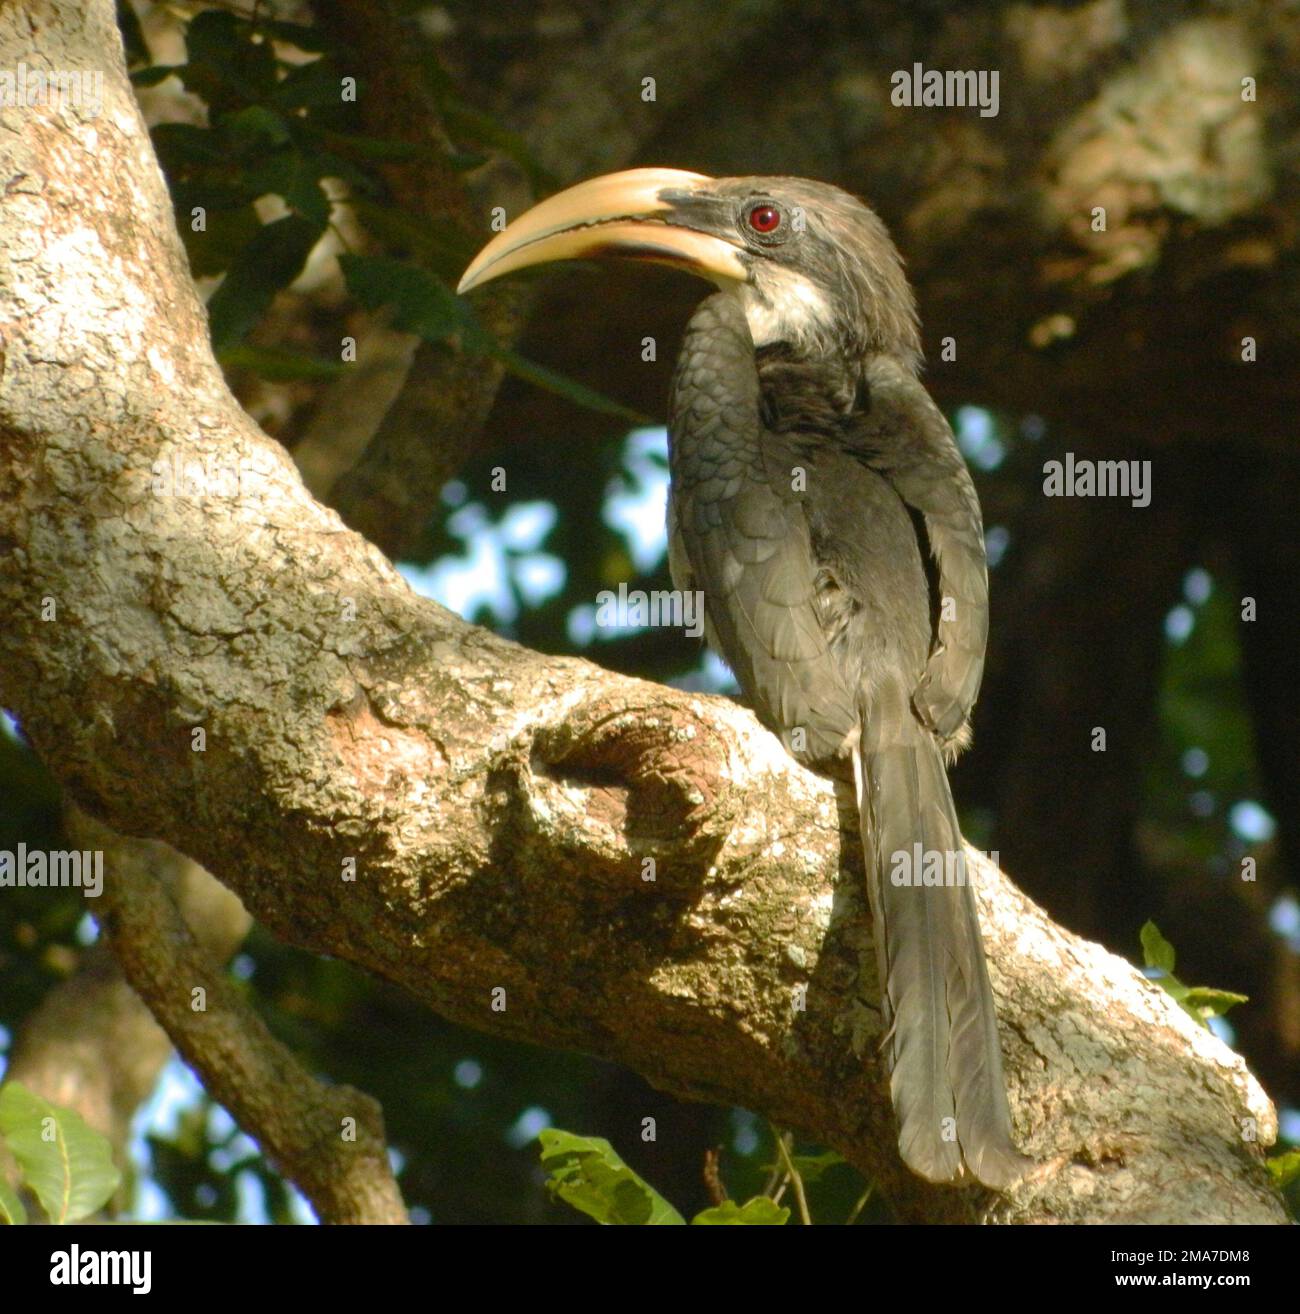 Le charme gris est un oiseau endémique que l'on observe couramment dans les zones sèches. Les zones boisées humides sont un bon habitat pour elles. Locaux de Mahamephna, Anuradhapura. Sri Lanka. Banque D'Images